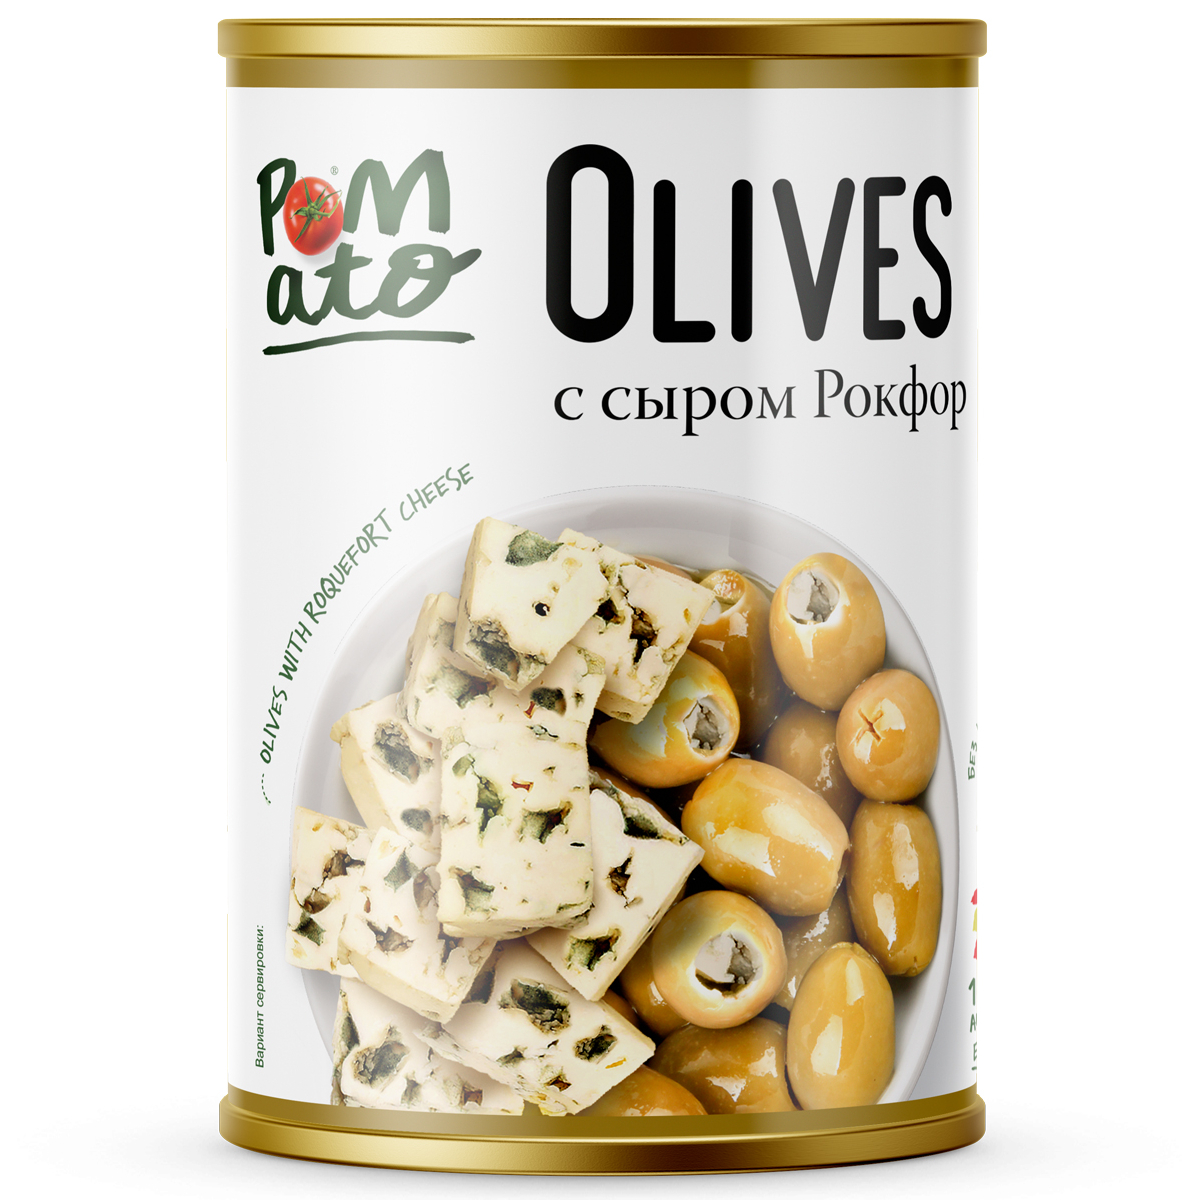 Оливки Pomato с сыром рокфор, 300 г оливки maestro de oliva с сыром 300 г